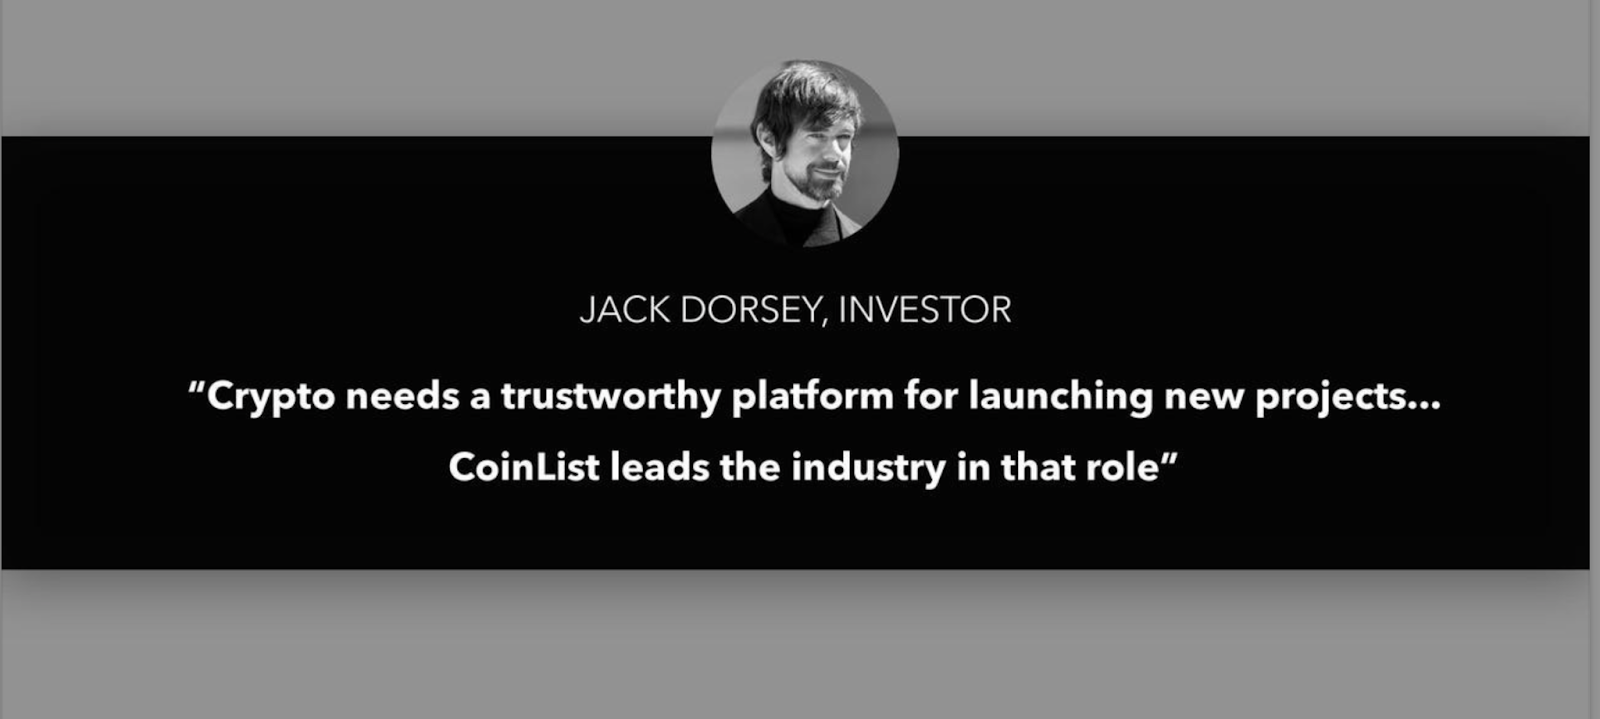 Diapositiva de la plataforma de presentación de Coinlist